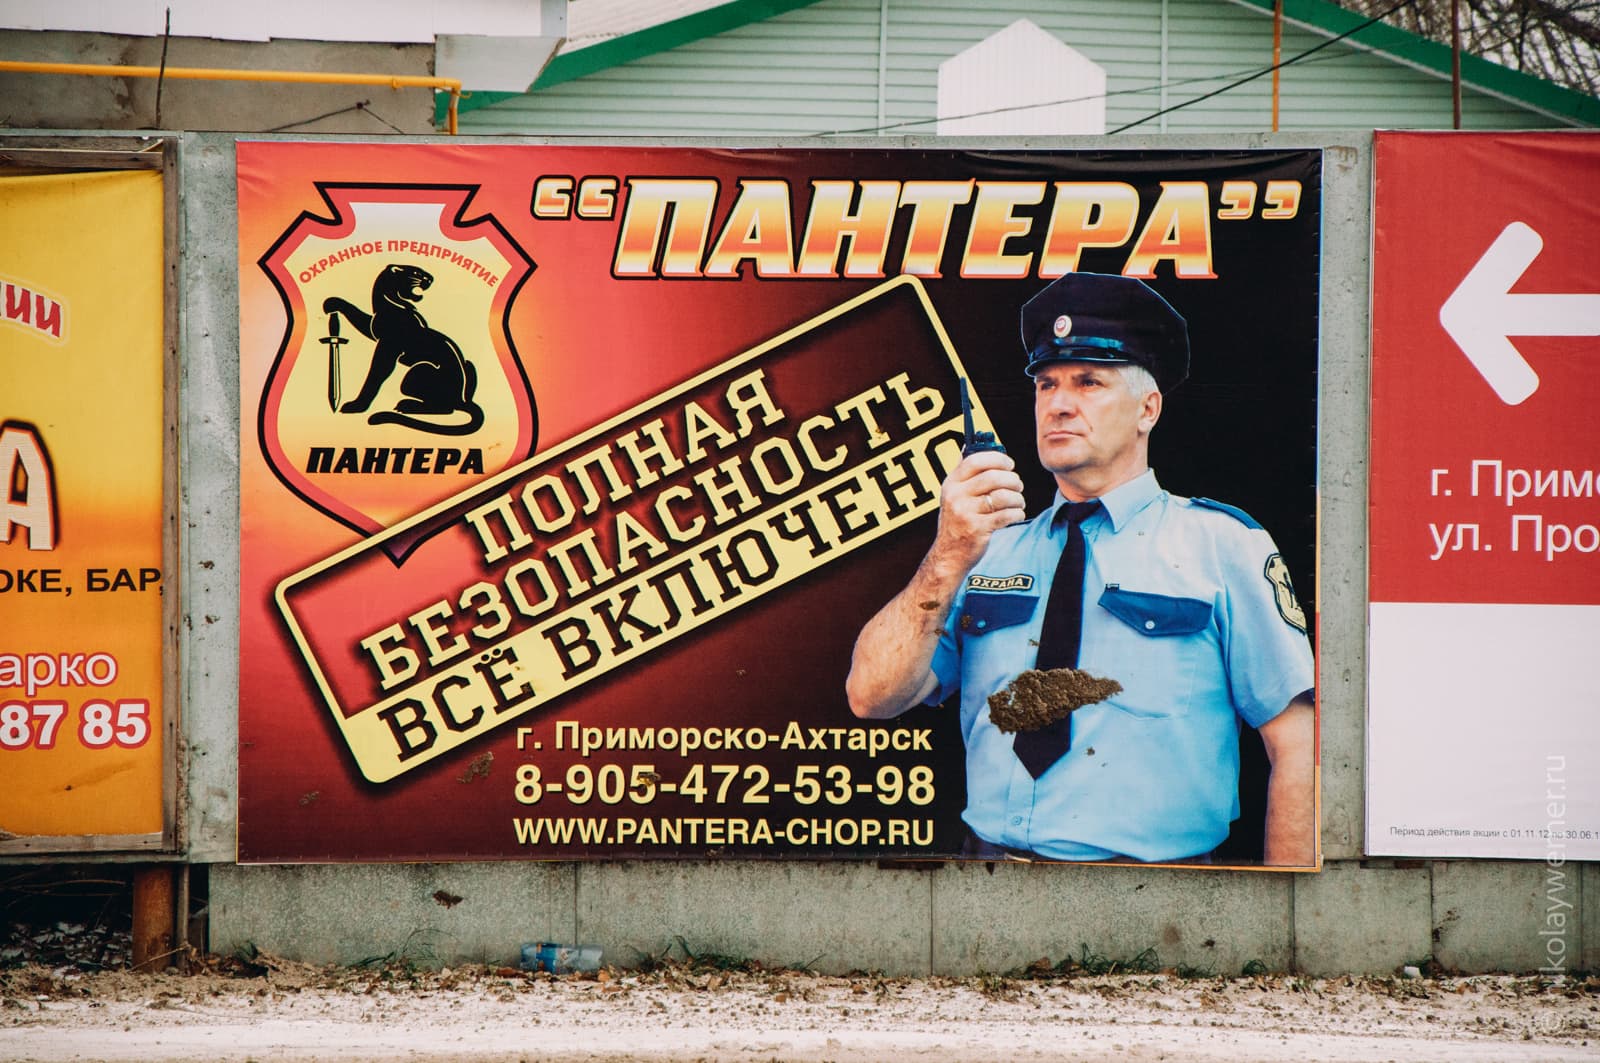 Рекламный баннер с мужиком в форме охранника. Рекламируют охранное агентство.